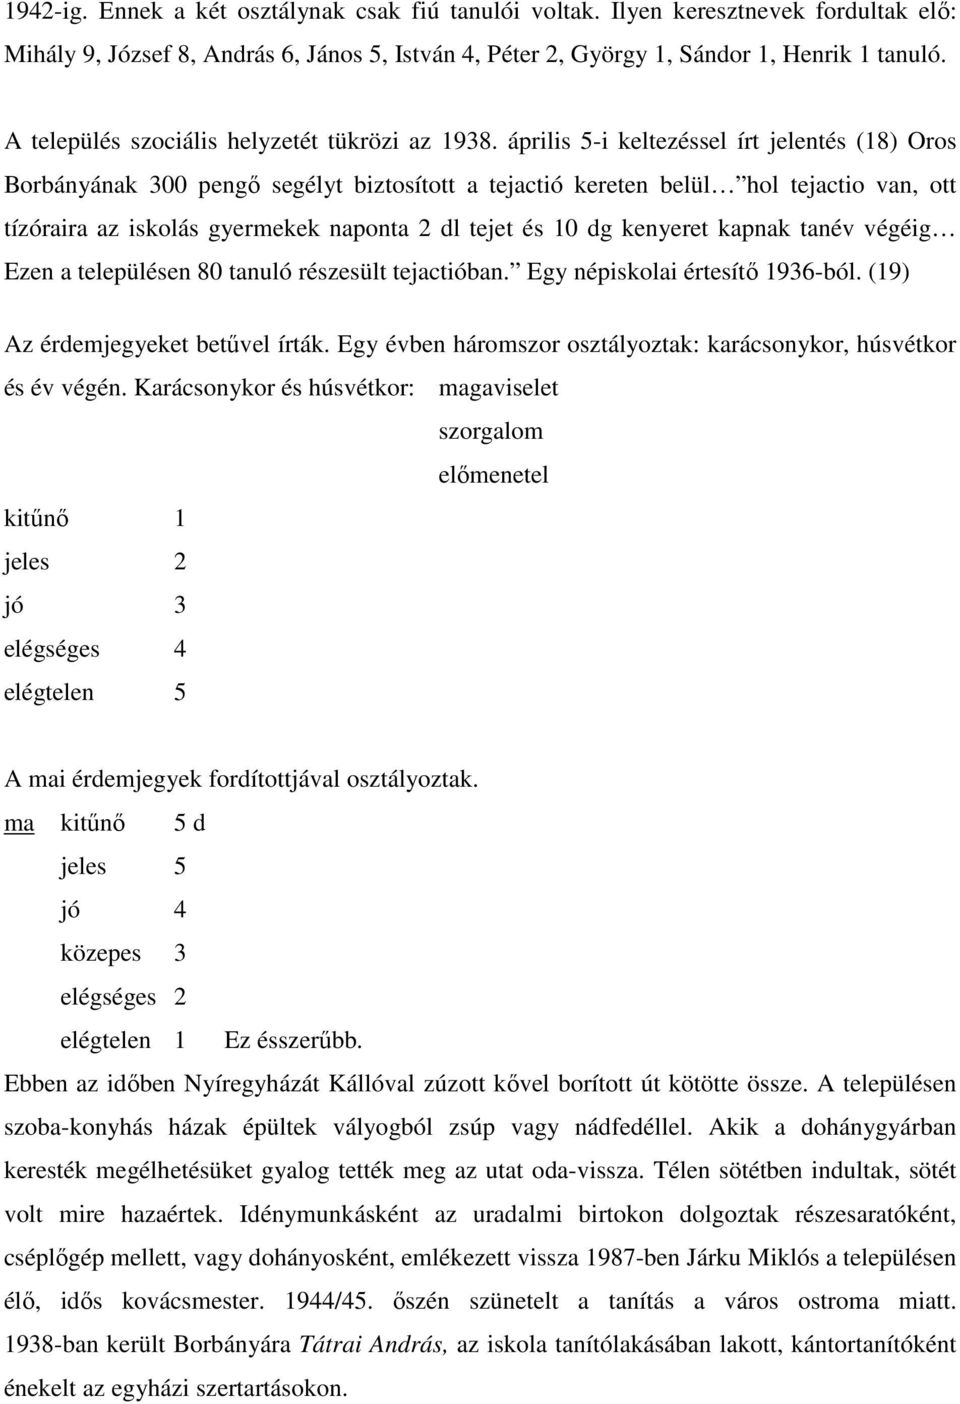 április 5-i keltezéssel írt jelentés (18) Oros Borbányának 300 pengı segélyt biztosított a tejactió kereten belül hol tejactio van, ott tízóraira az iskolás gyermekek naponta 2 dl tejet és 10 dg